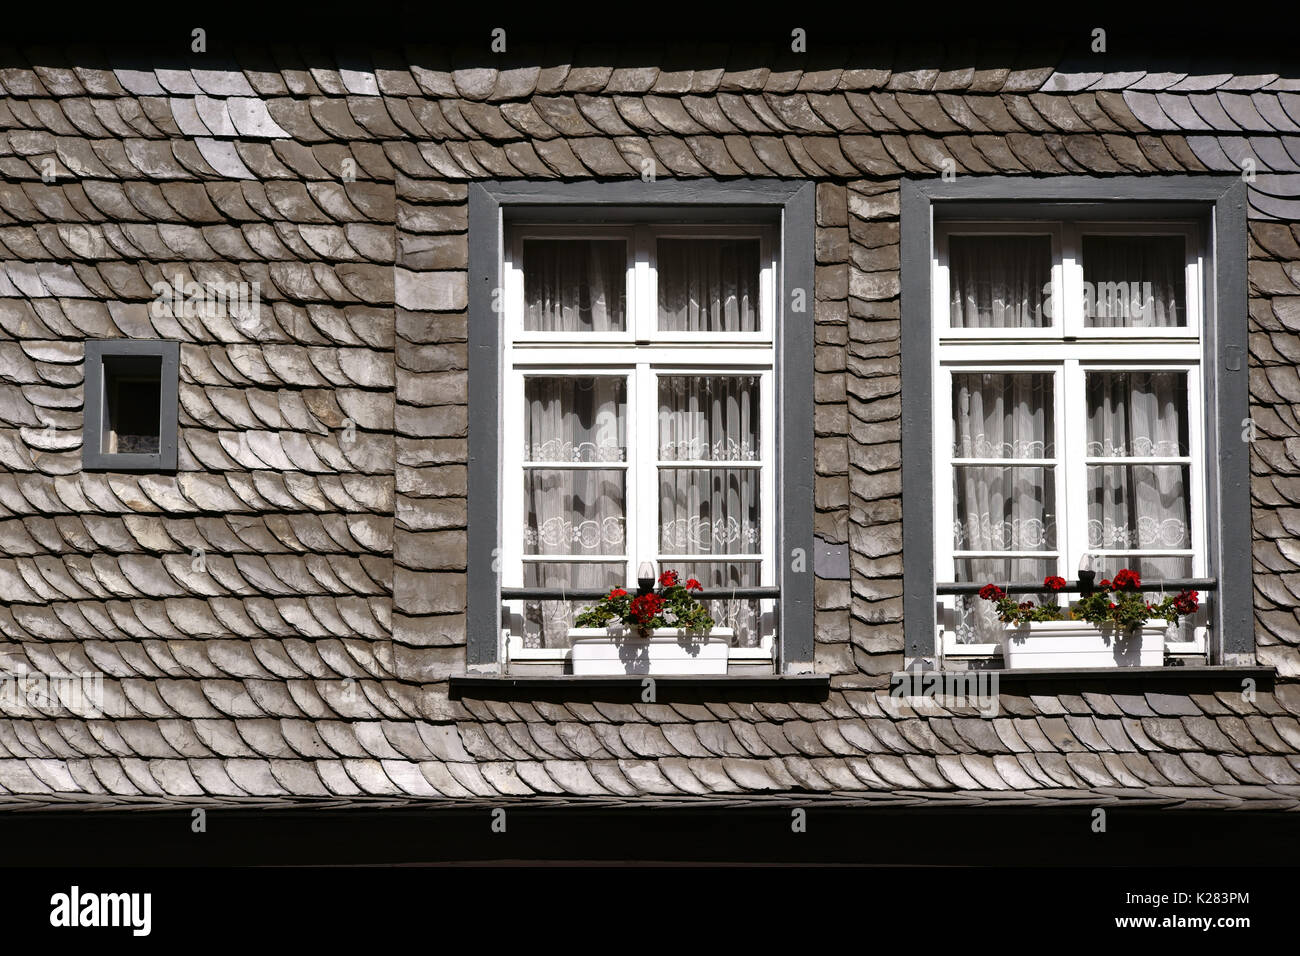 Ein schindeldach mit zwei Dachfenster und Blumenkästen Stockfotografie -  Alamy